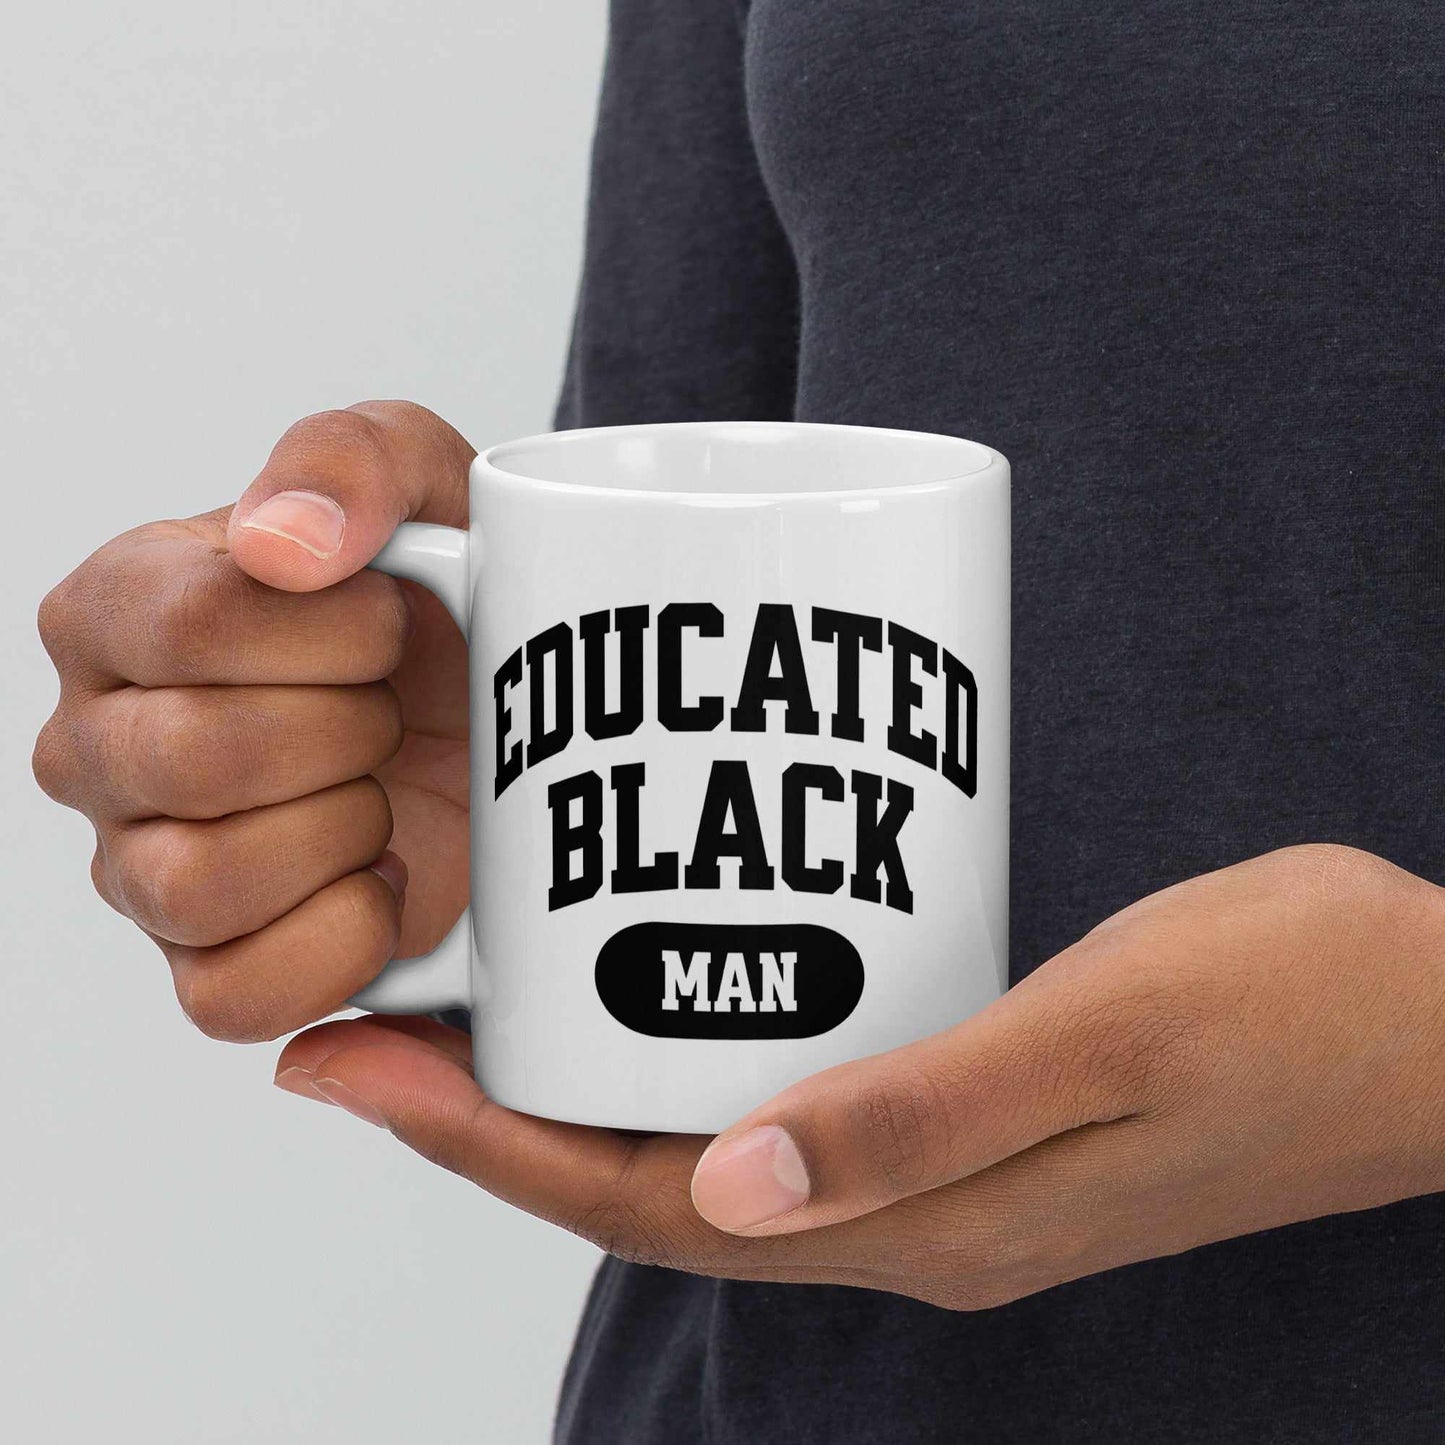 Educated Black Man Mug (11oz, 15oz, 20oz)